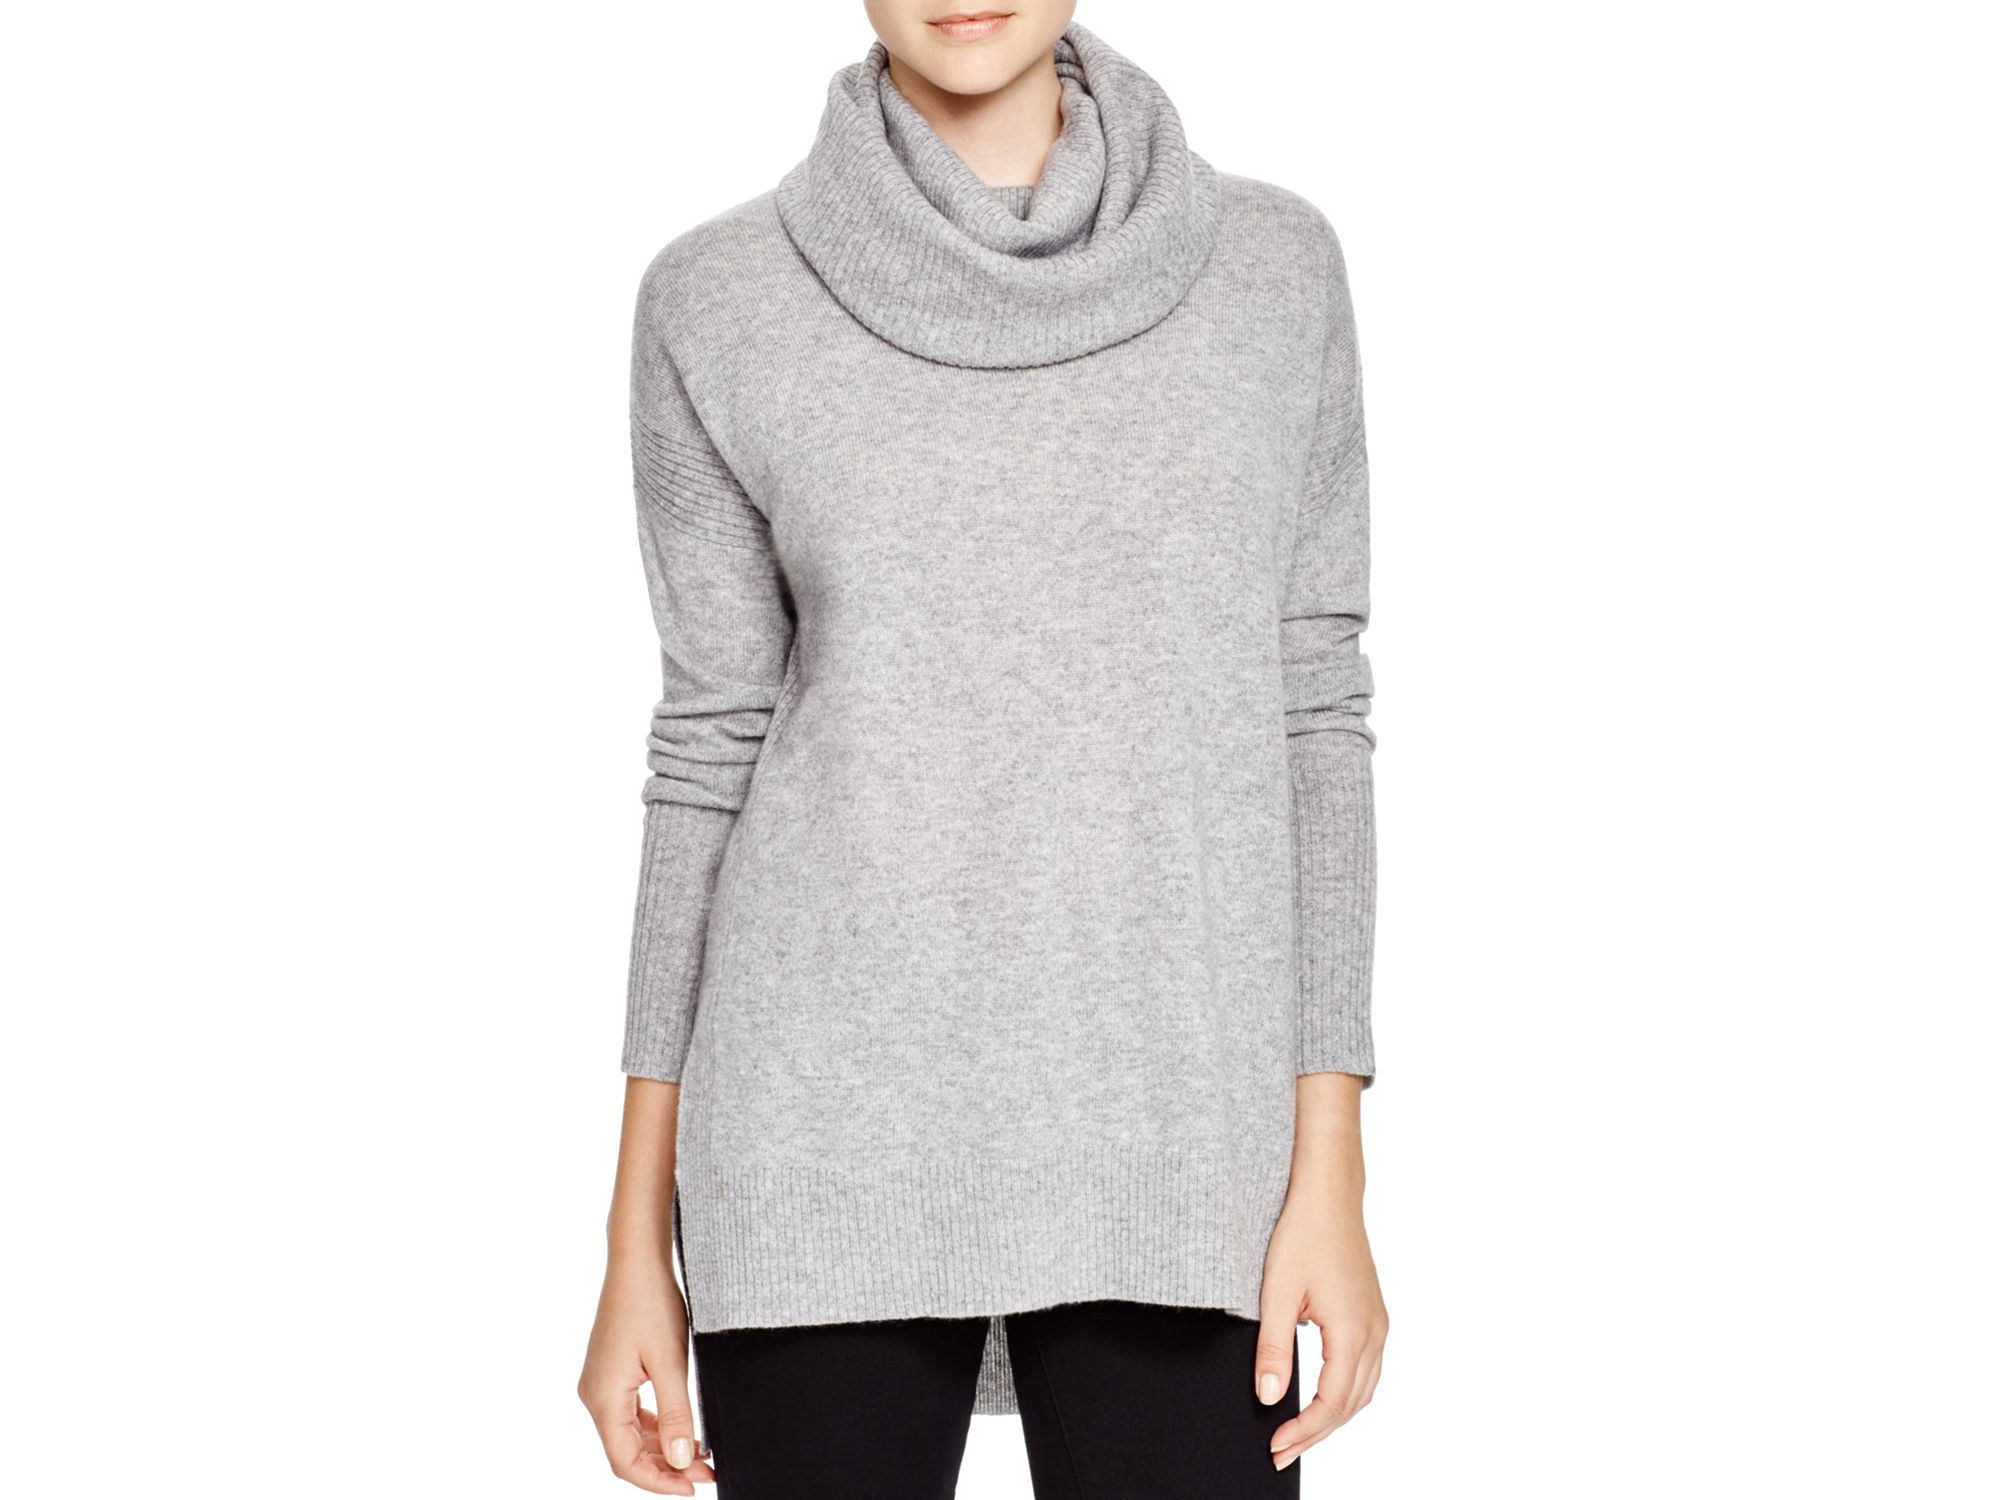 Lyst - Diane von Furstenberg Ahiga Cashmere Turtleneck Sweater in Gray